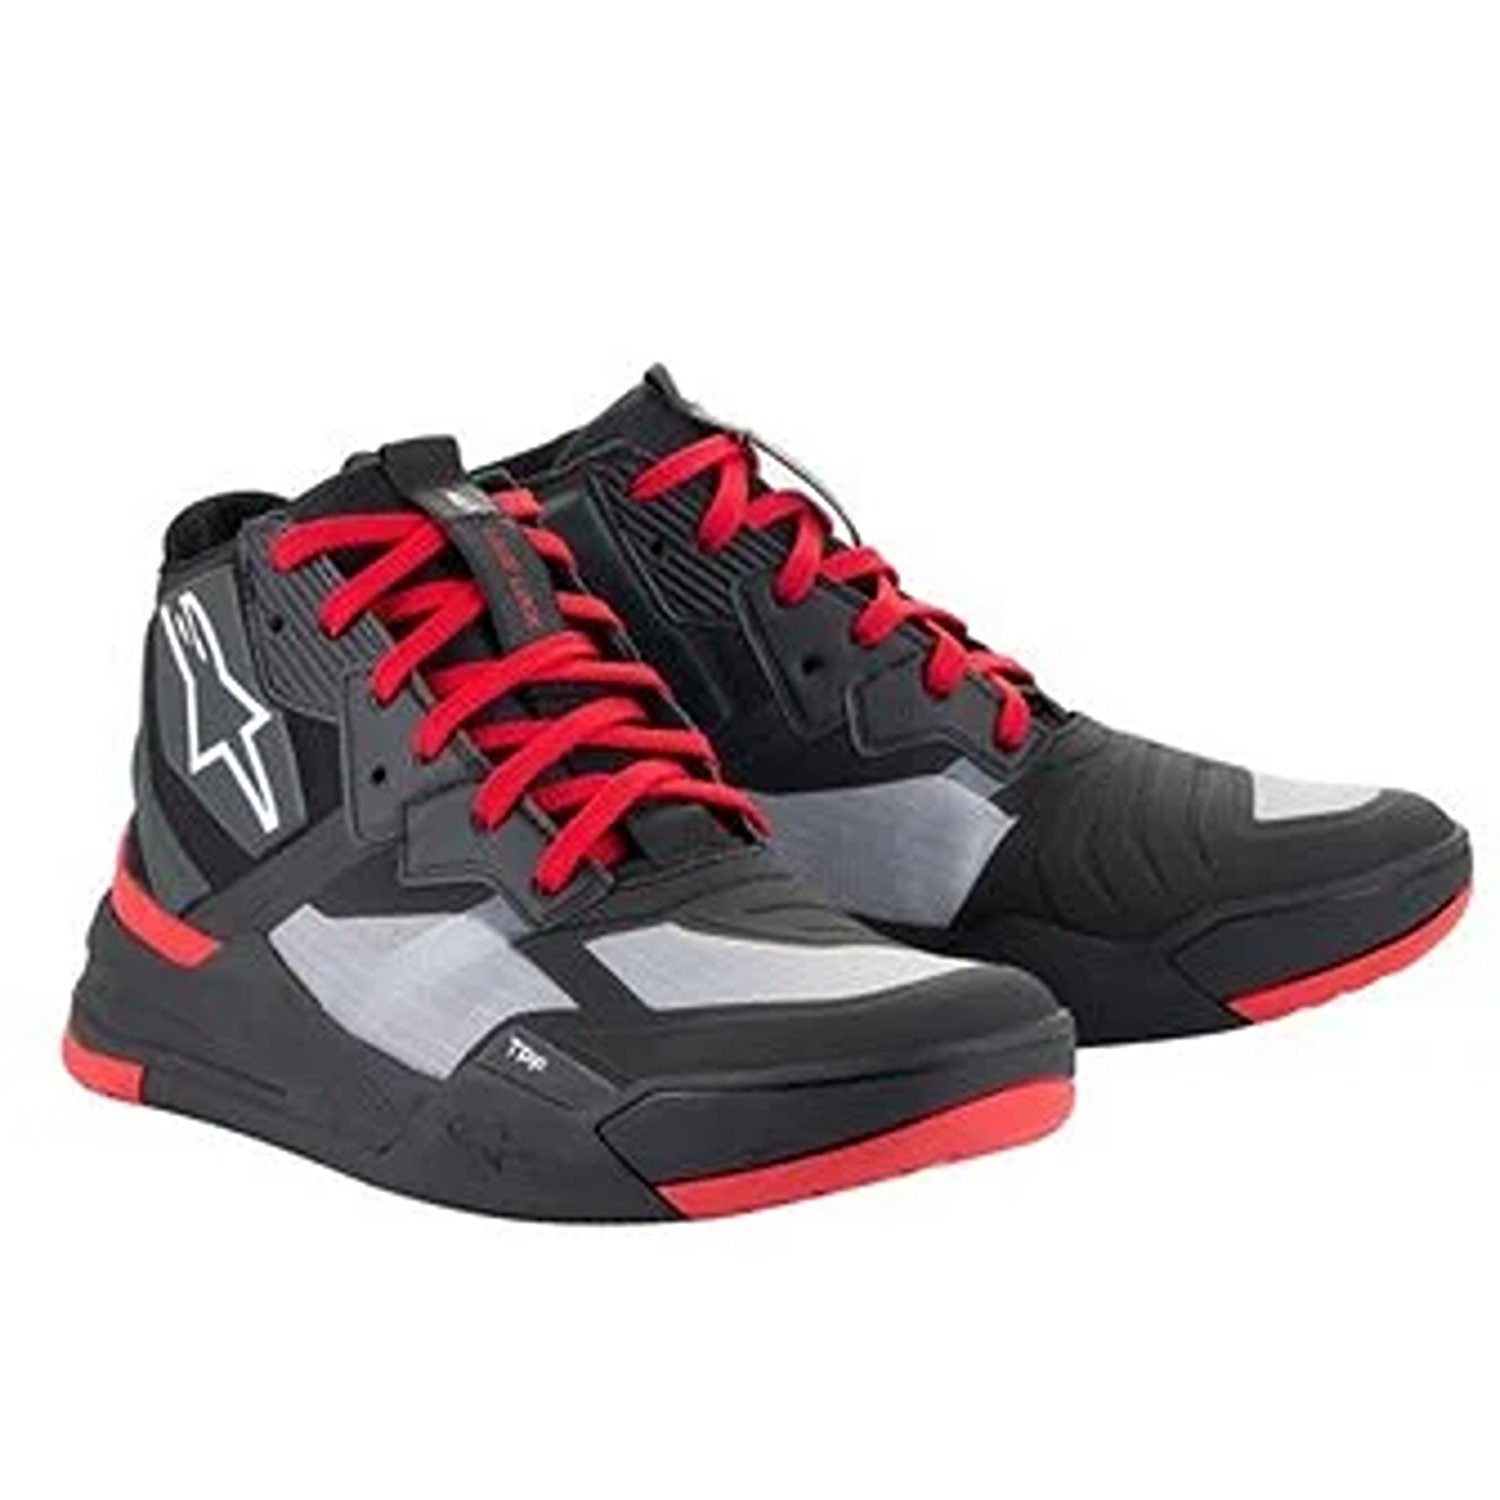 Image of Alpinestars Speedflight Shoes Black Bright Red White Größe US 11